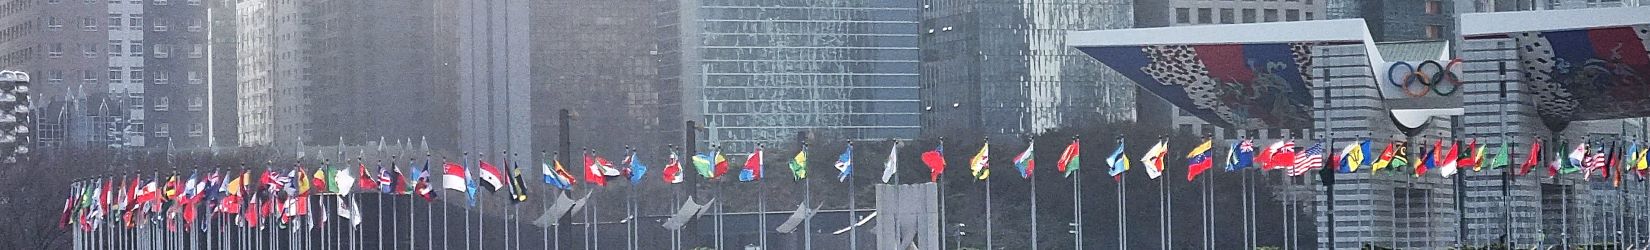 올림픽 참가국들의 국기게양대에 수많은 국기들이 바람에 흔들이고 있음, 붉은 색이 제일 많이 보임, 뒤로는 평화의 문, 그 뒤로는 고층 빌딩,